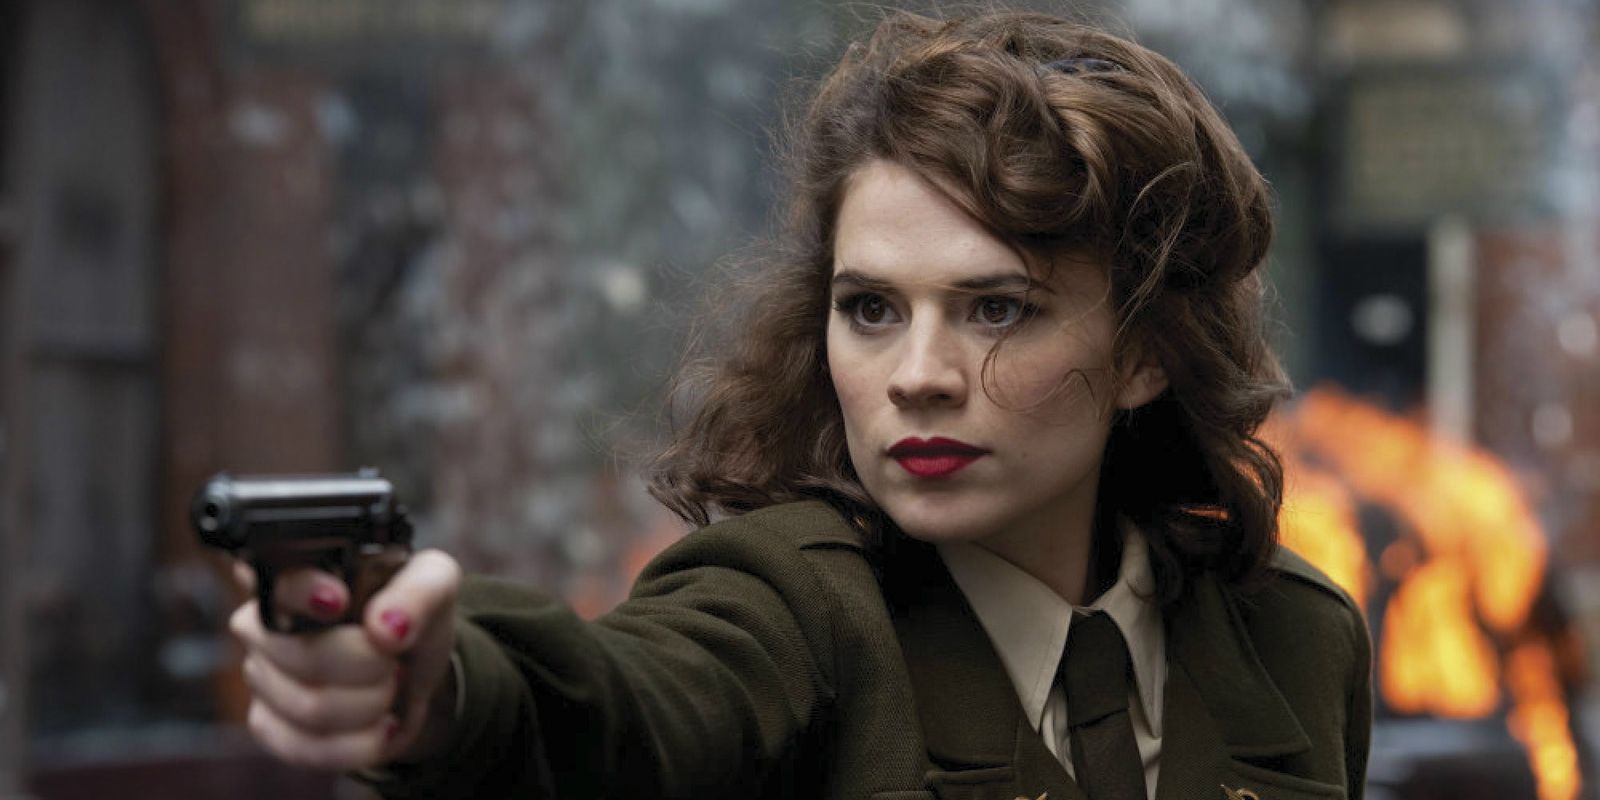 Agent Carter aiming a gun